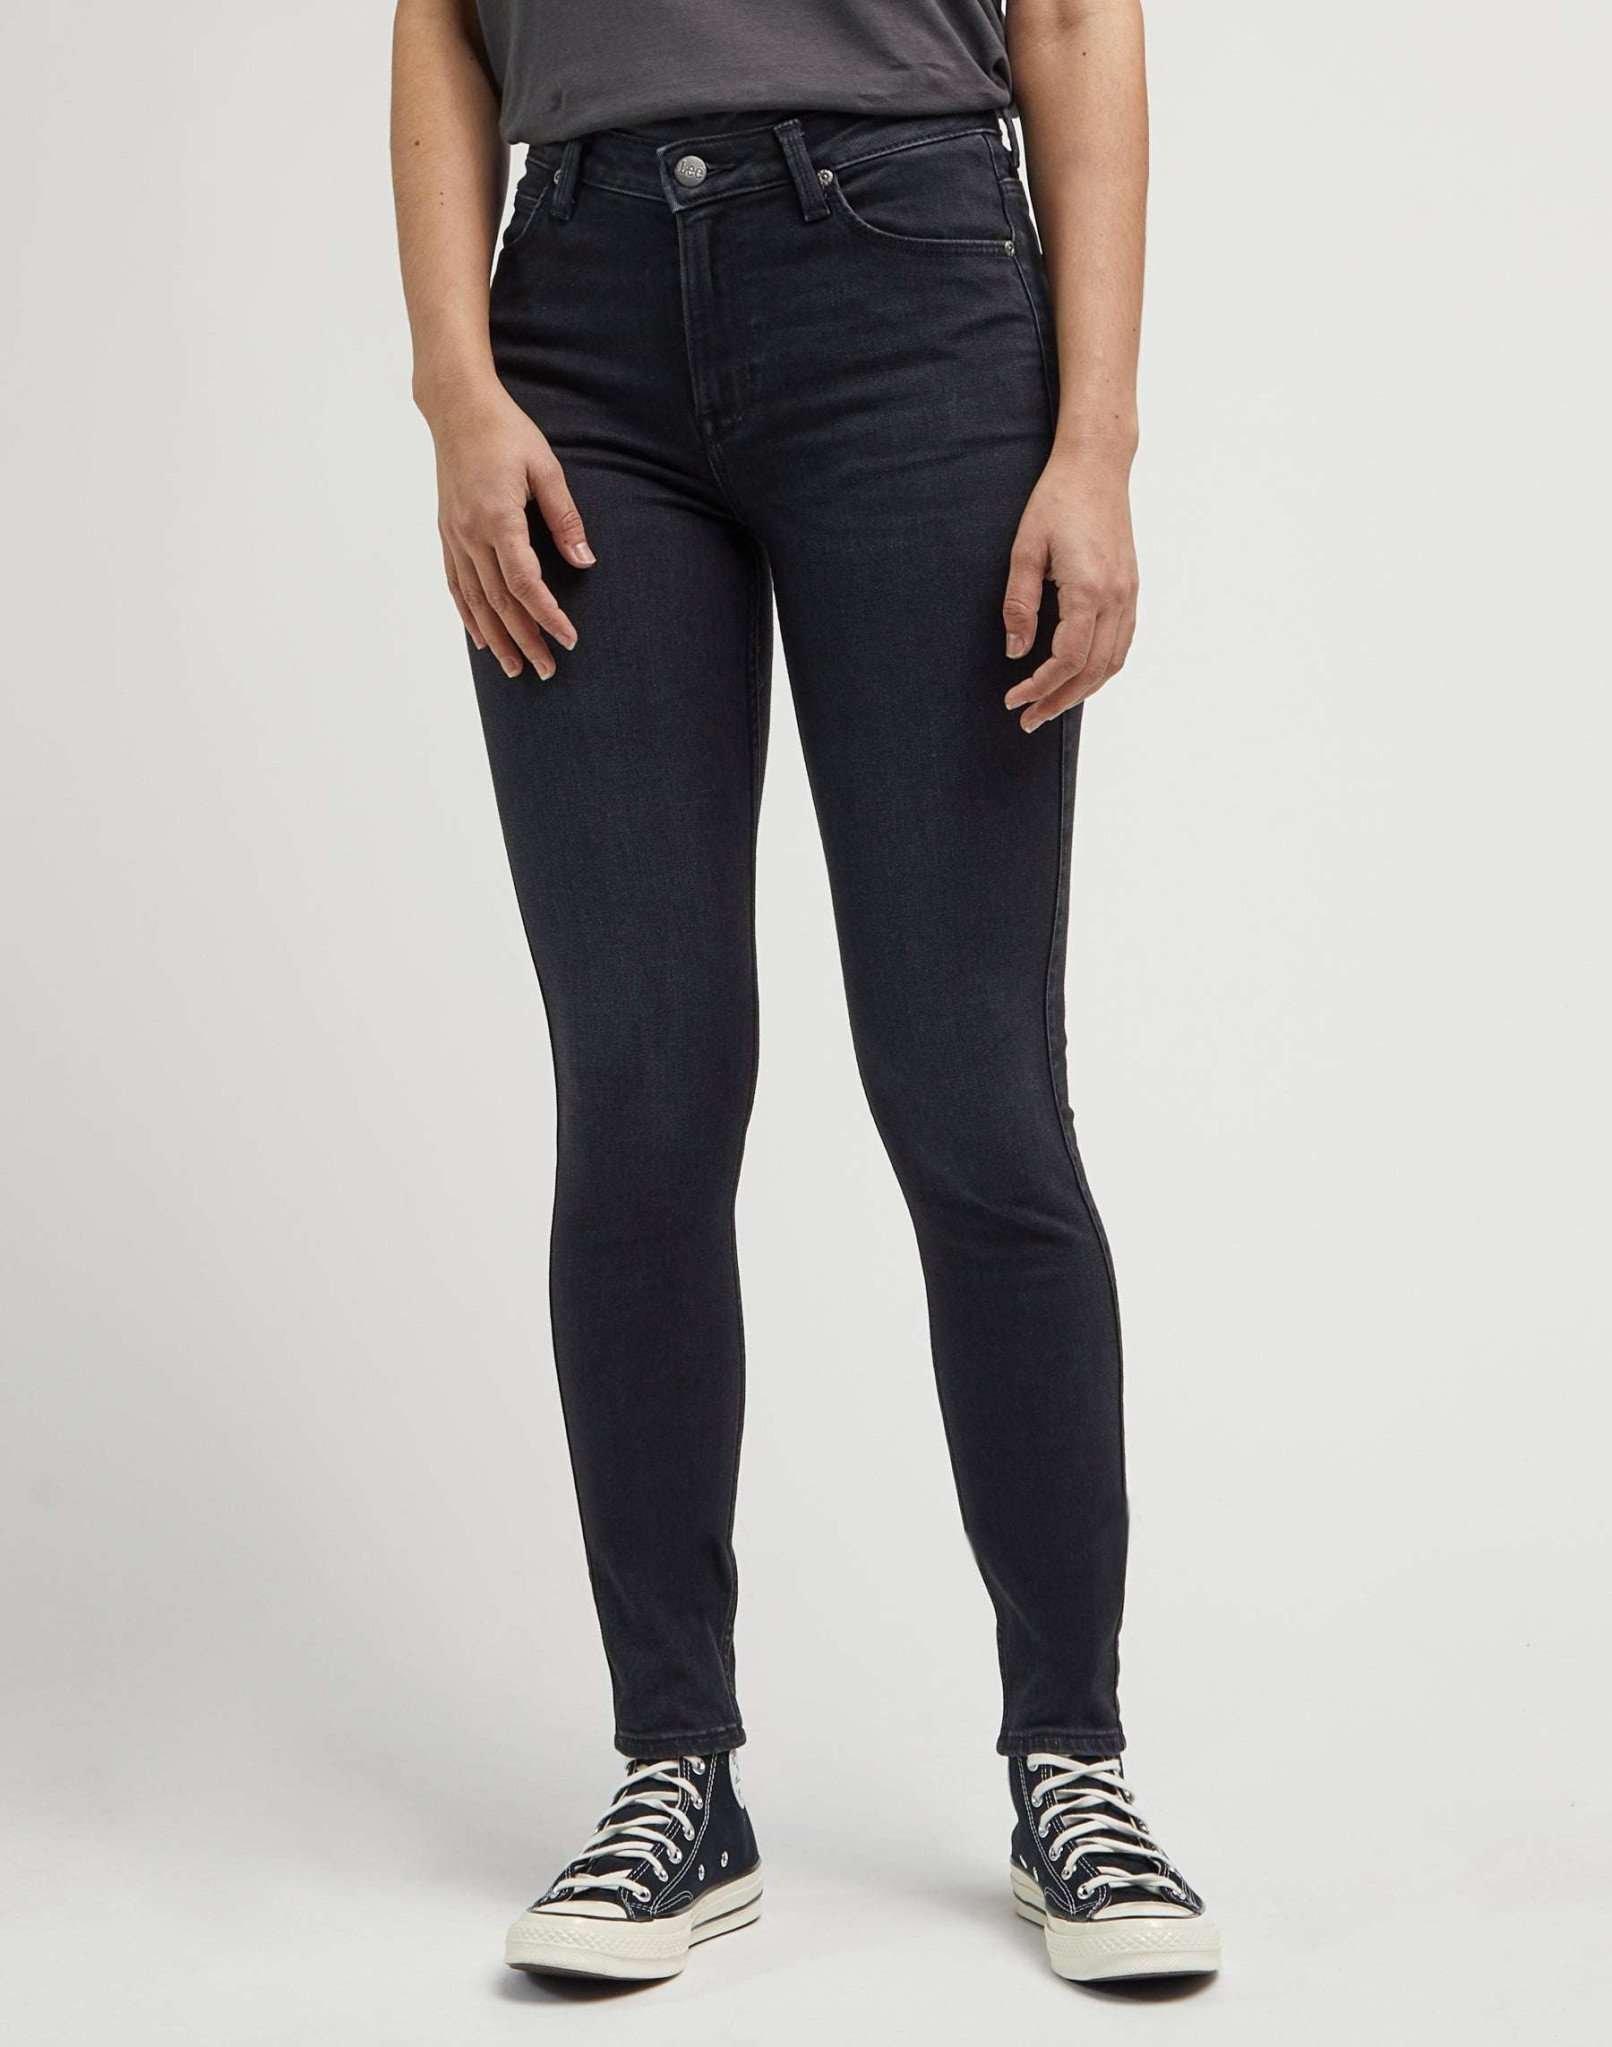 Jeans Skinny Fit Scarlett High Damen Schwarz L33/W26 von Lee